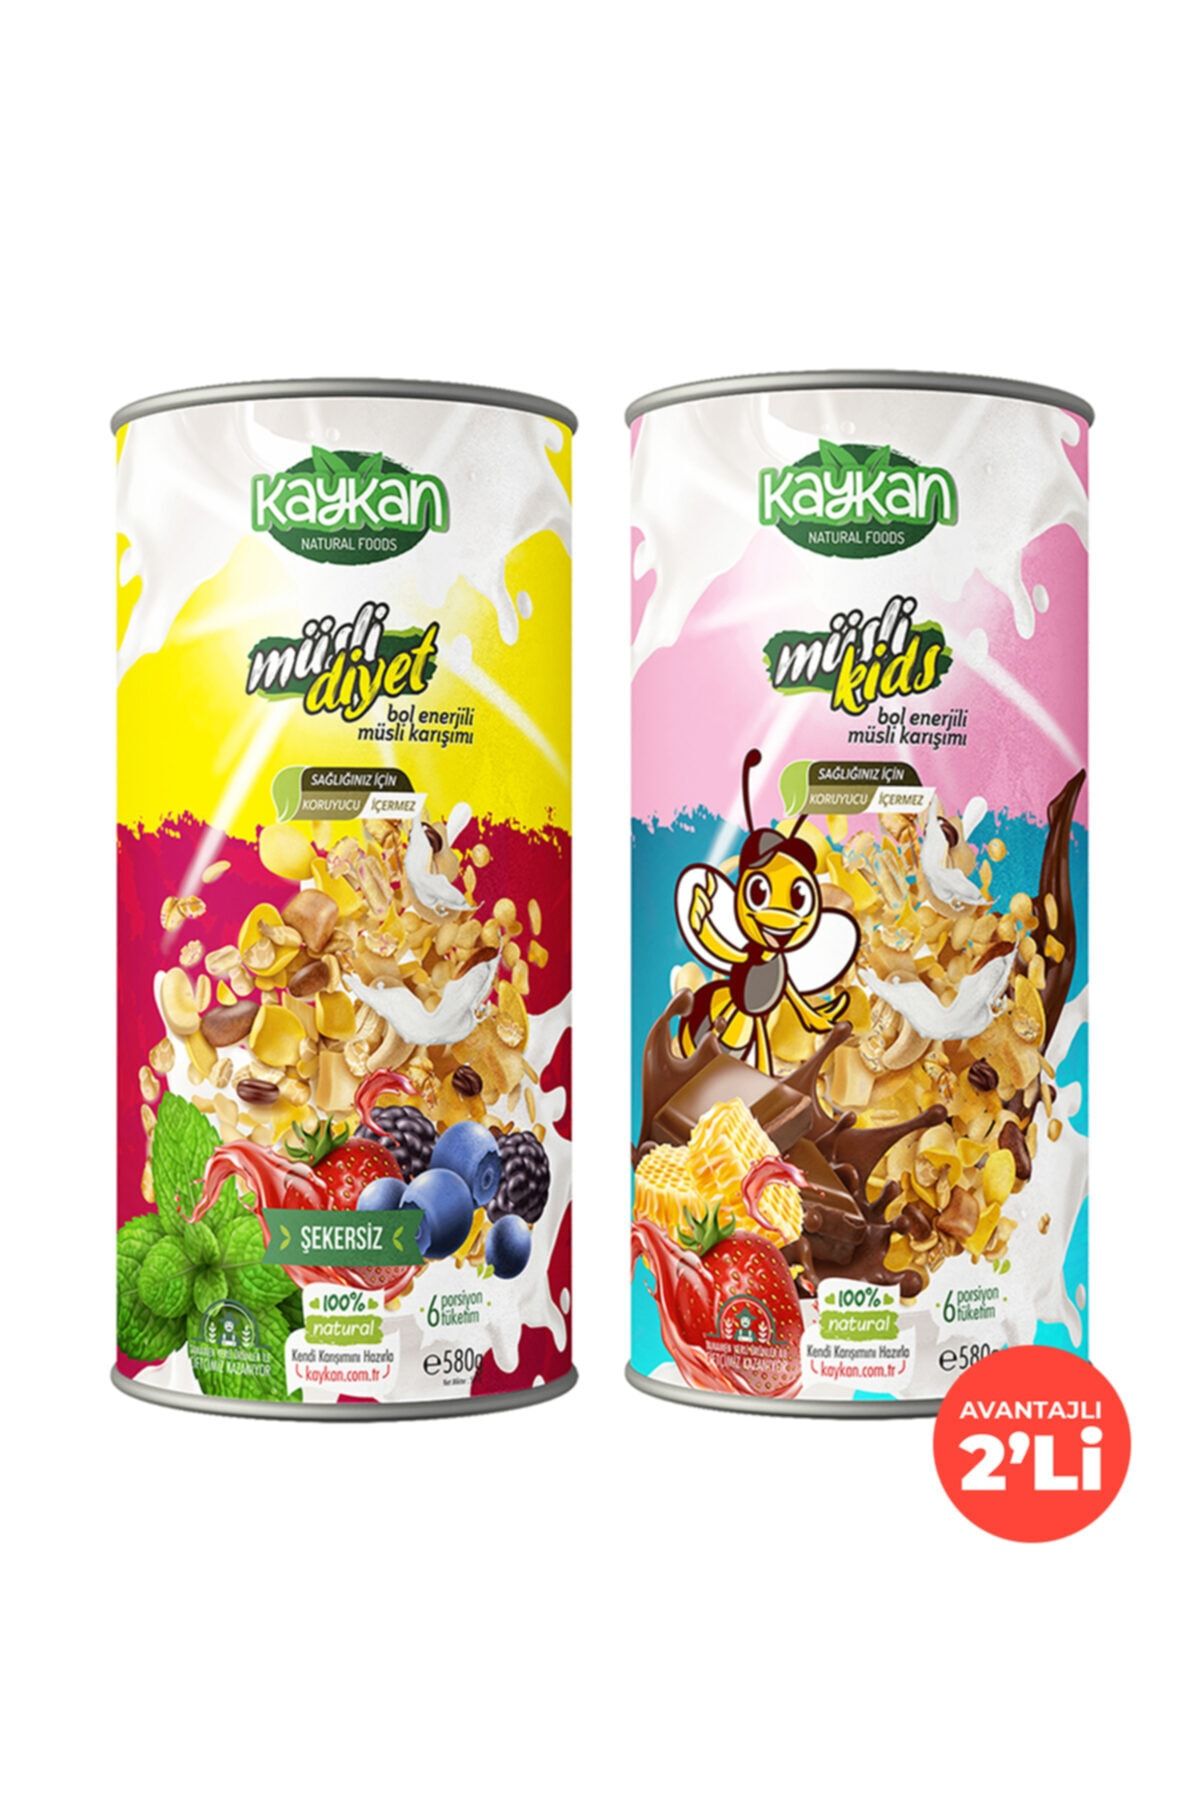 Kaykan Natural Foods Kaykan Müsli Diyet + Müsli Kids Granola 580gr 2'li Paket